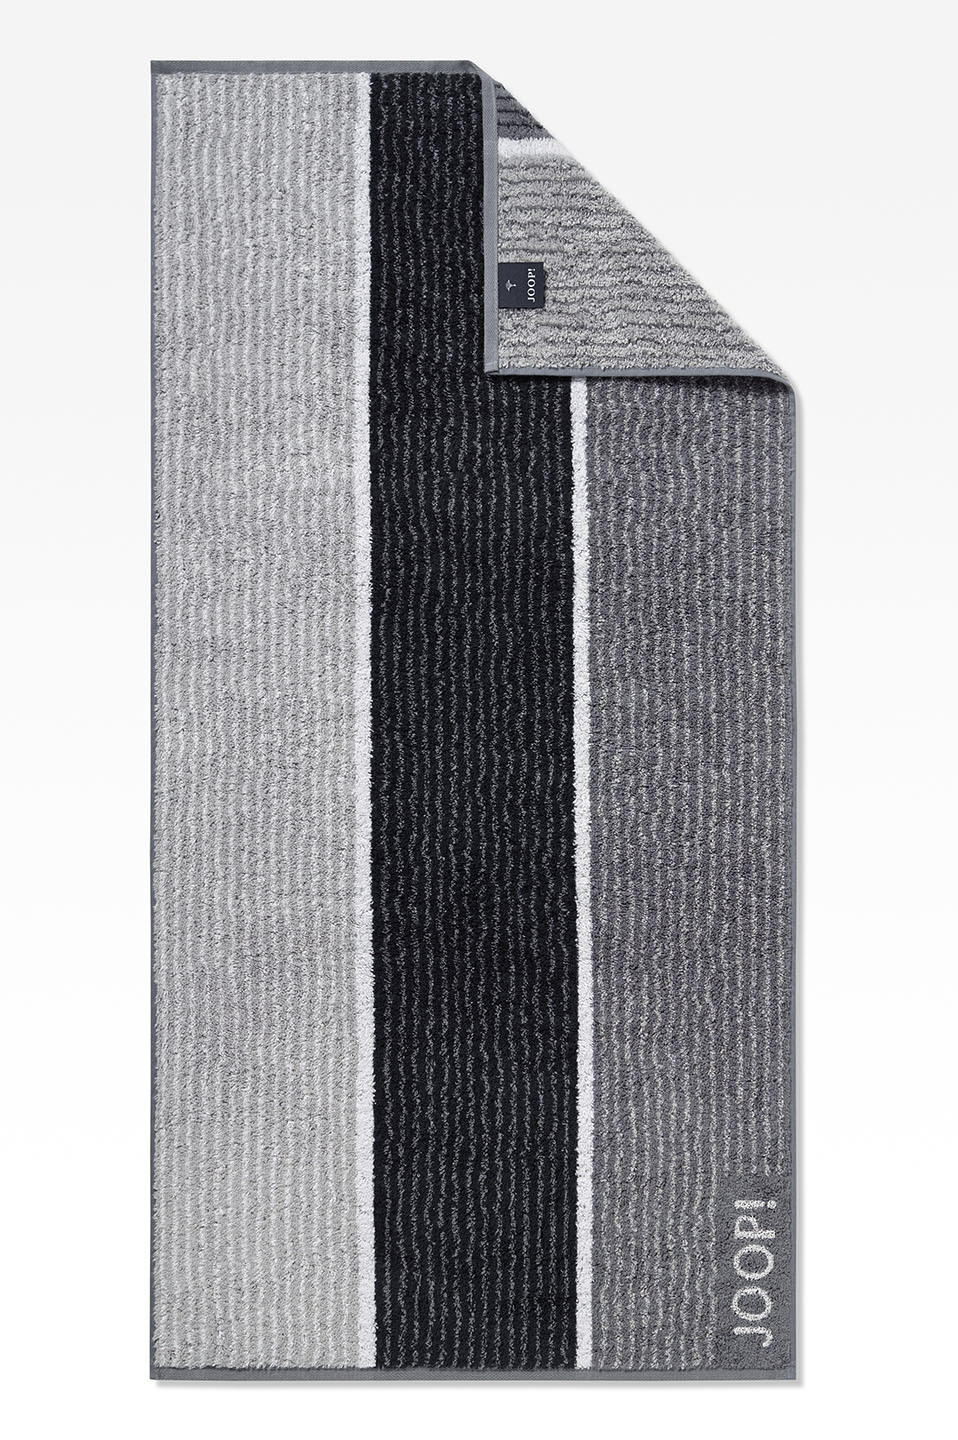 DUSCHTUCH Signature Lines 80/150 cm  - Schwarz/Grau, Basics, Textil (80/150cm) - Joop!